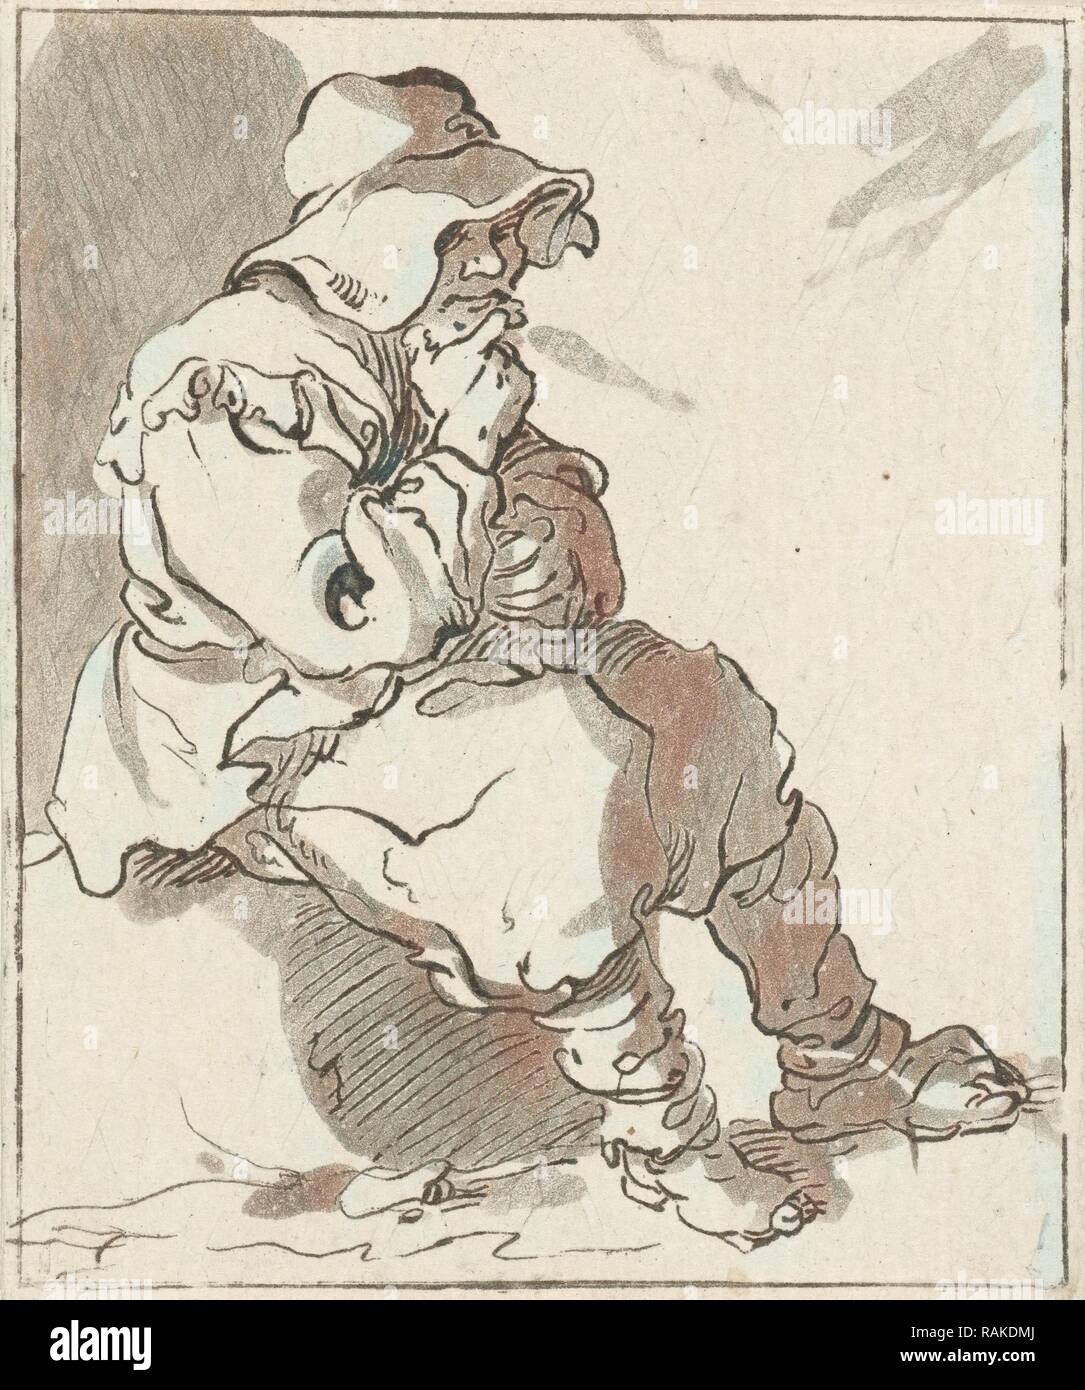 Uomo seduto sulla pietra, Hermanus Fock, c. 1781 - c. 1822. Reinventato da Gibon. Arte Classica con un tocco di moderno reinventato Foto Stock